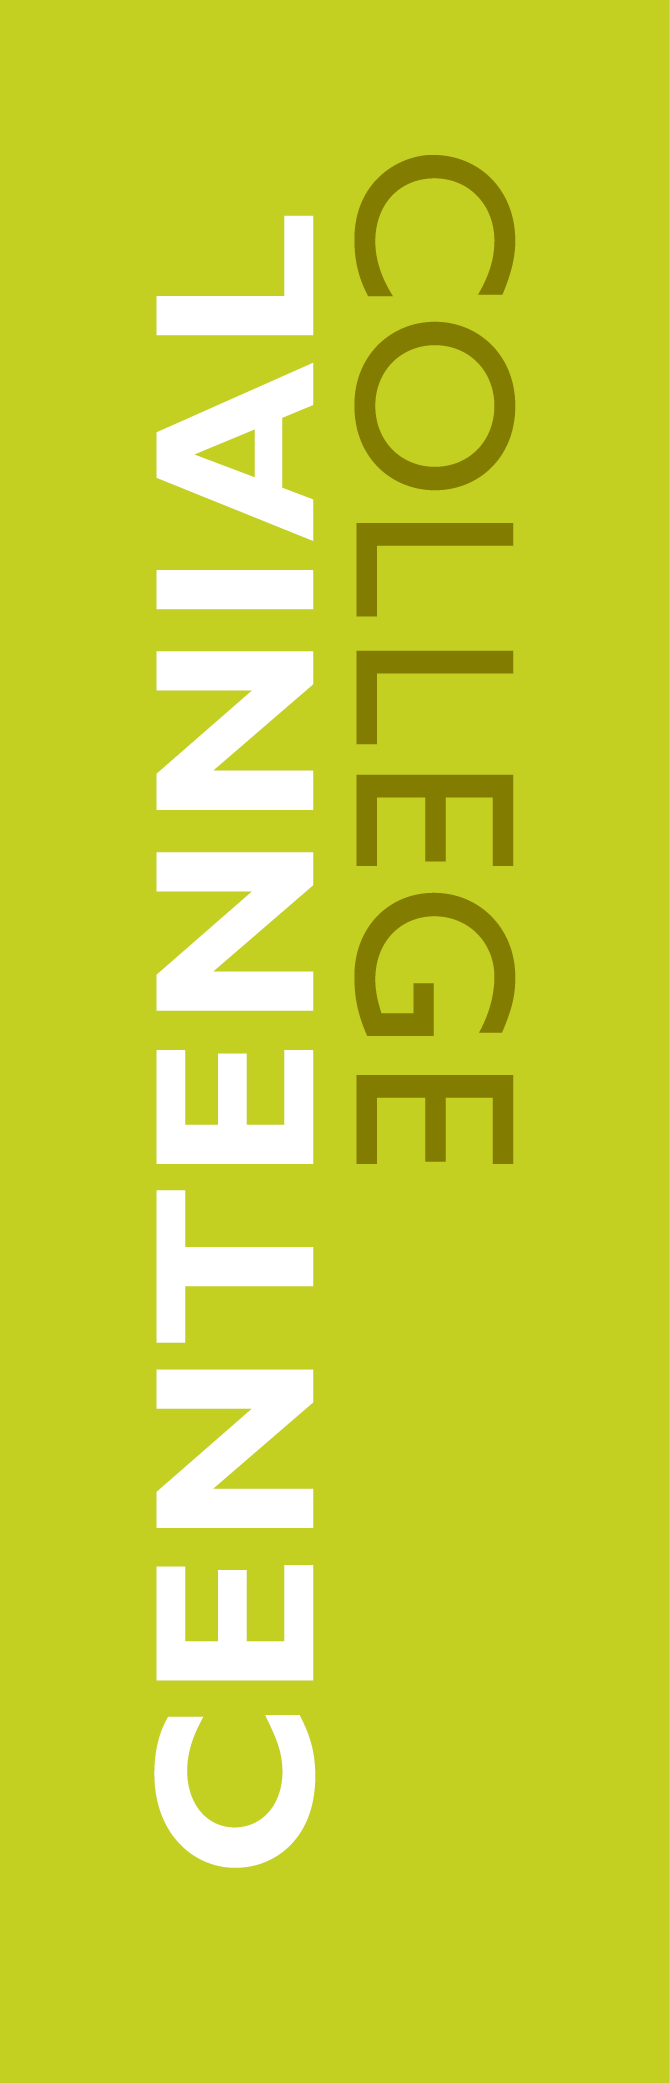 Centennial_college_logo.png